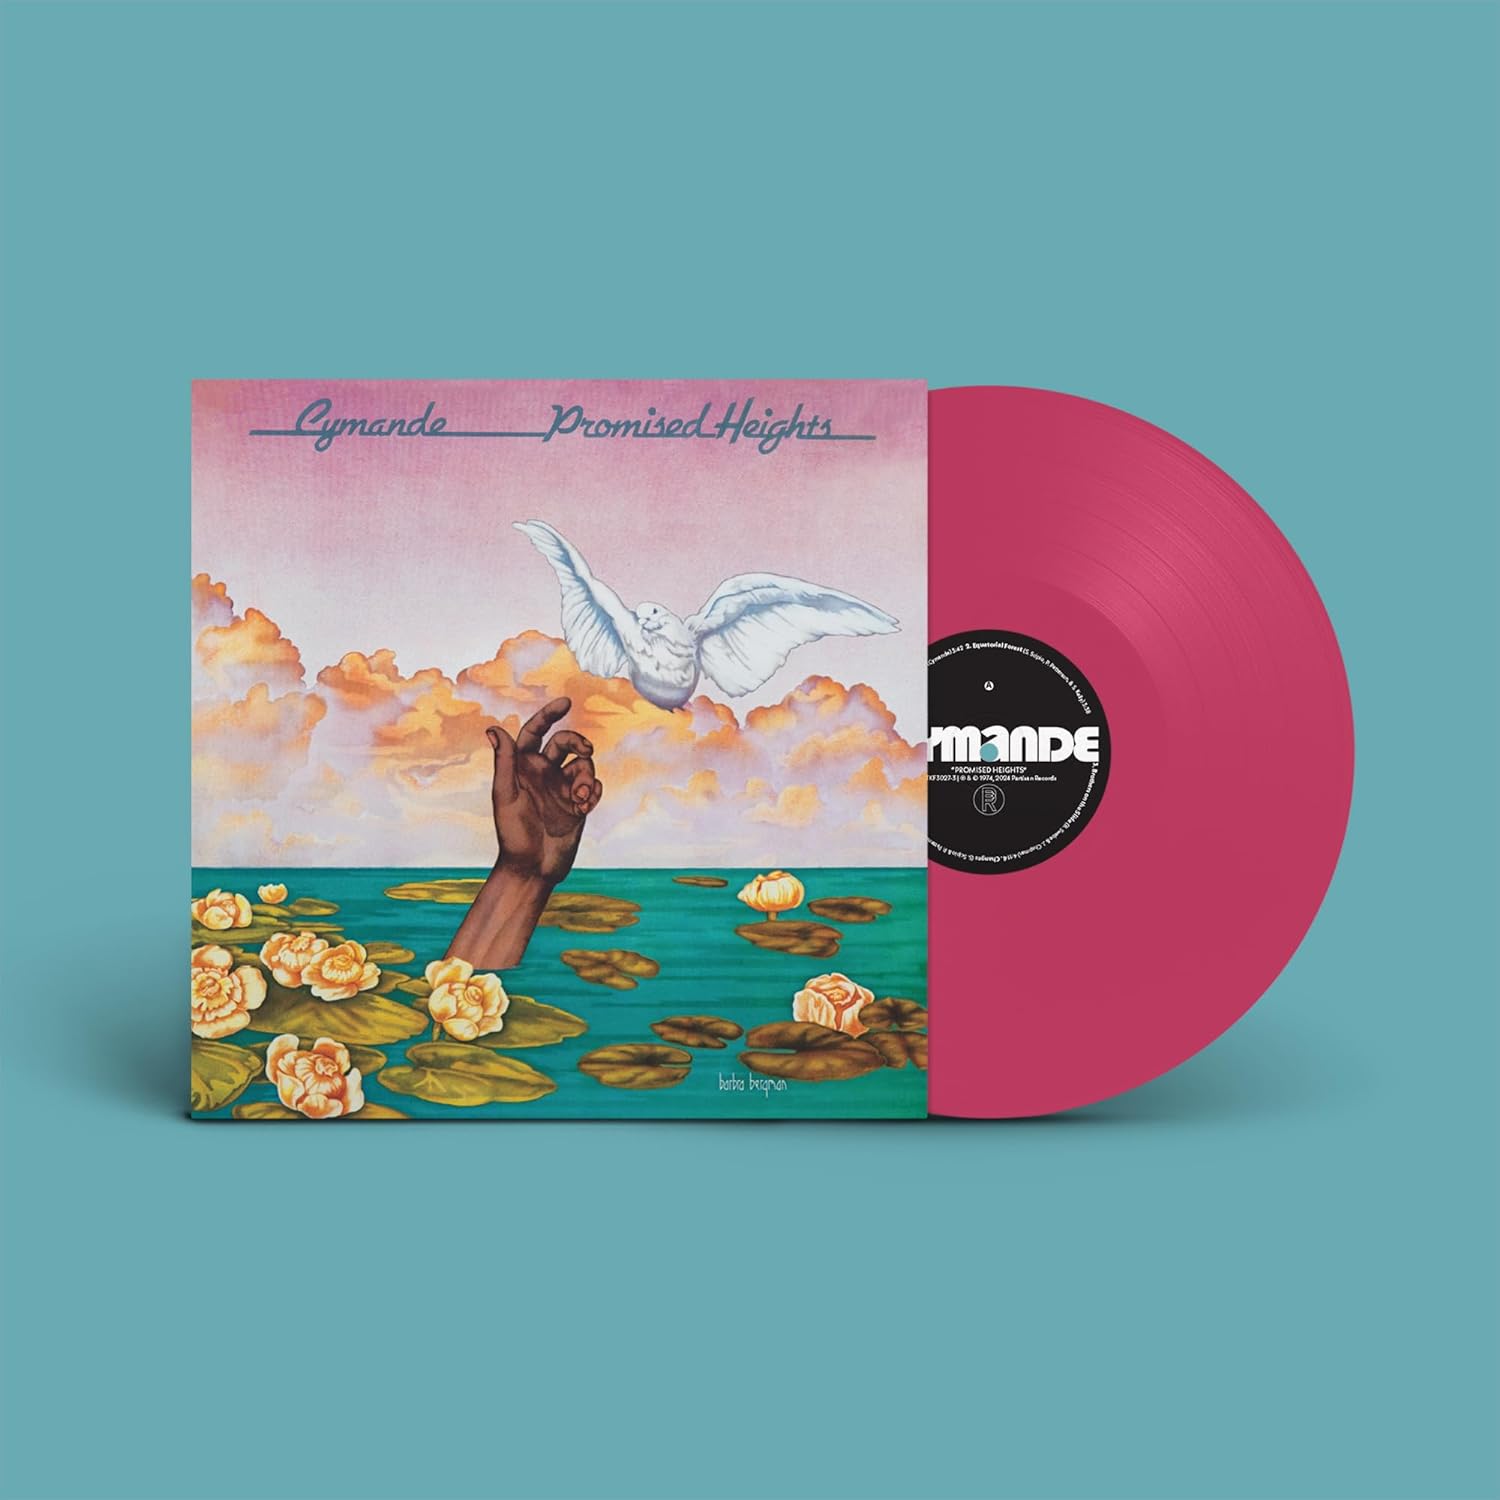 Cymande - Promised Heights [Pink Vinyl]